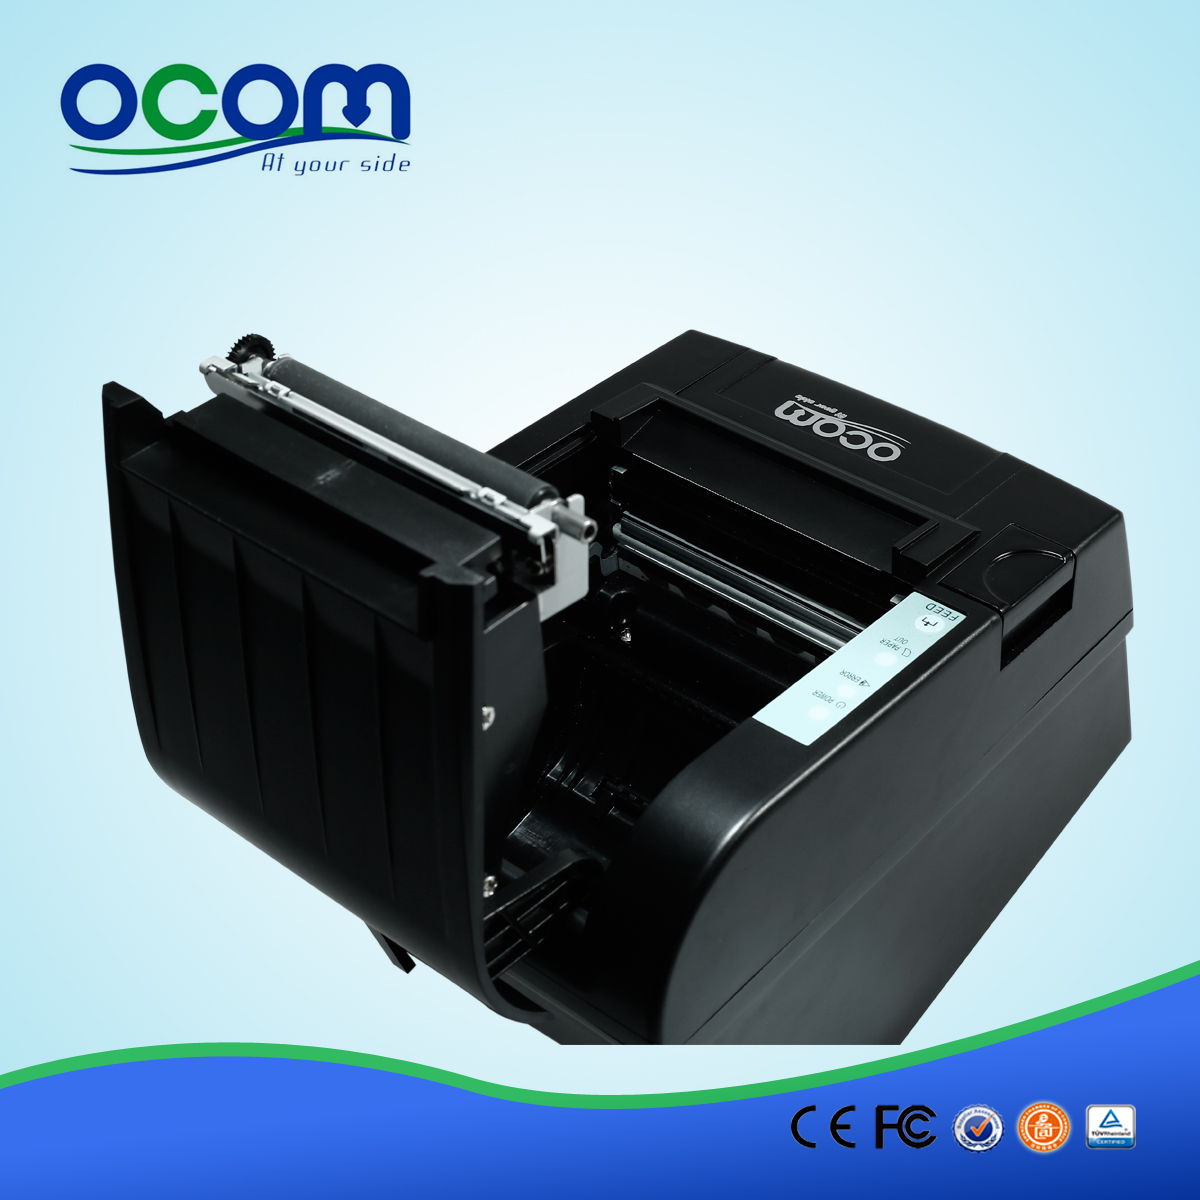 80MM واي فاي استلام الطابعة الحرارية OCPP-806-W